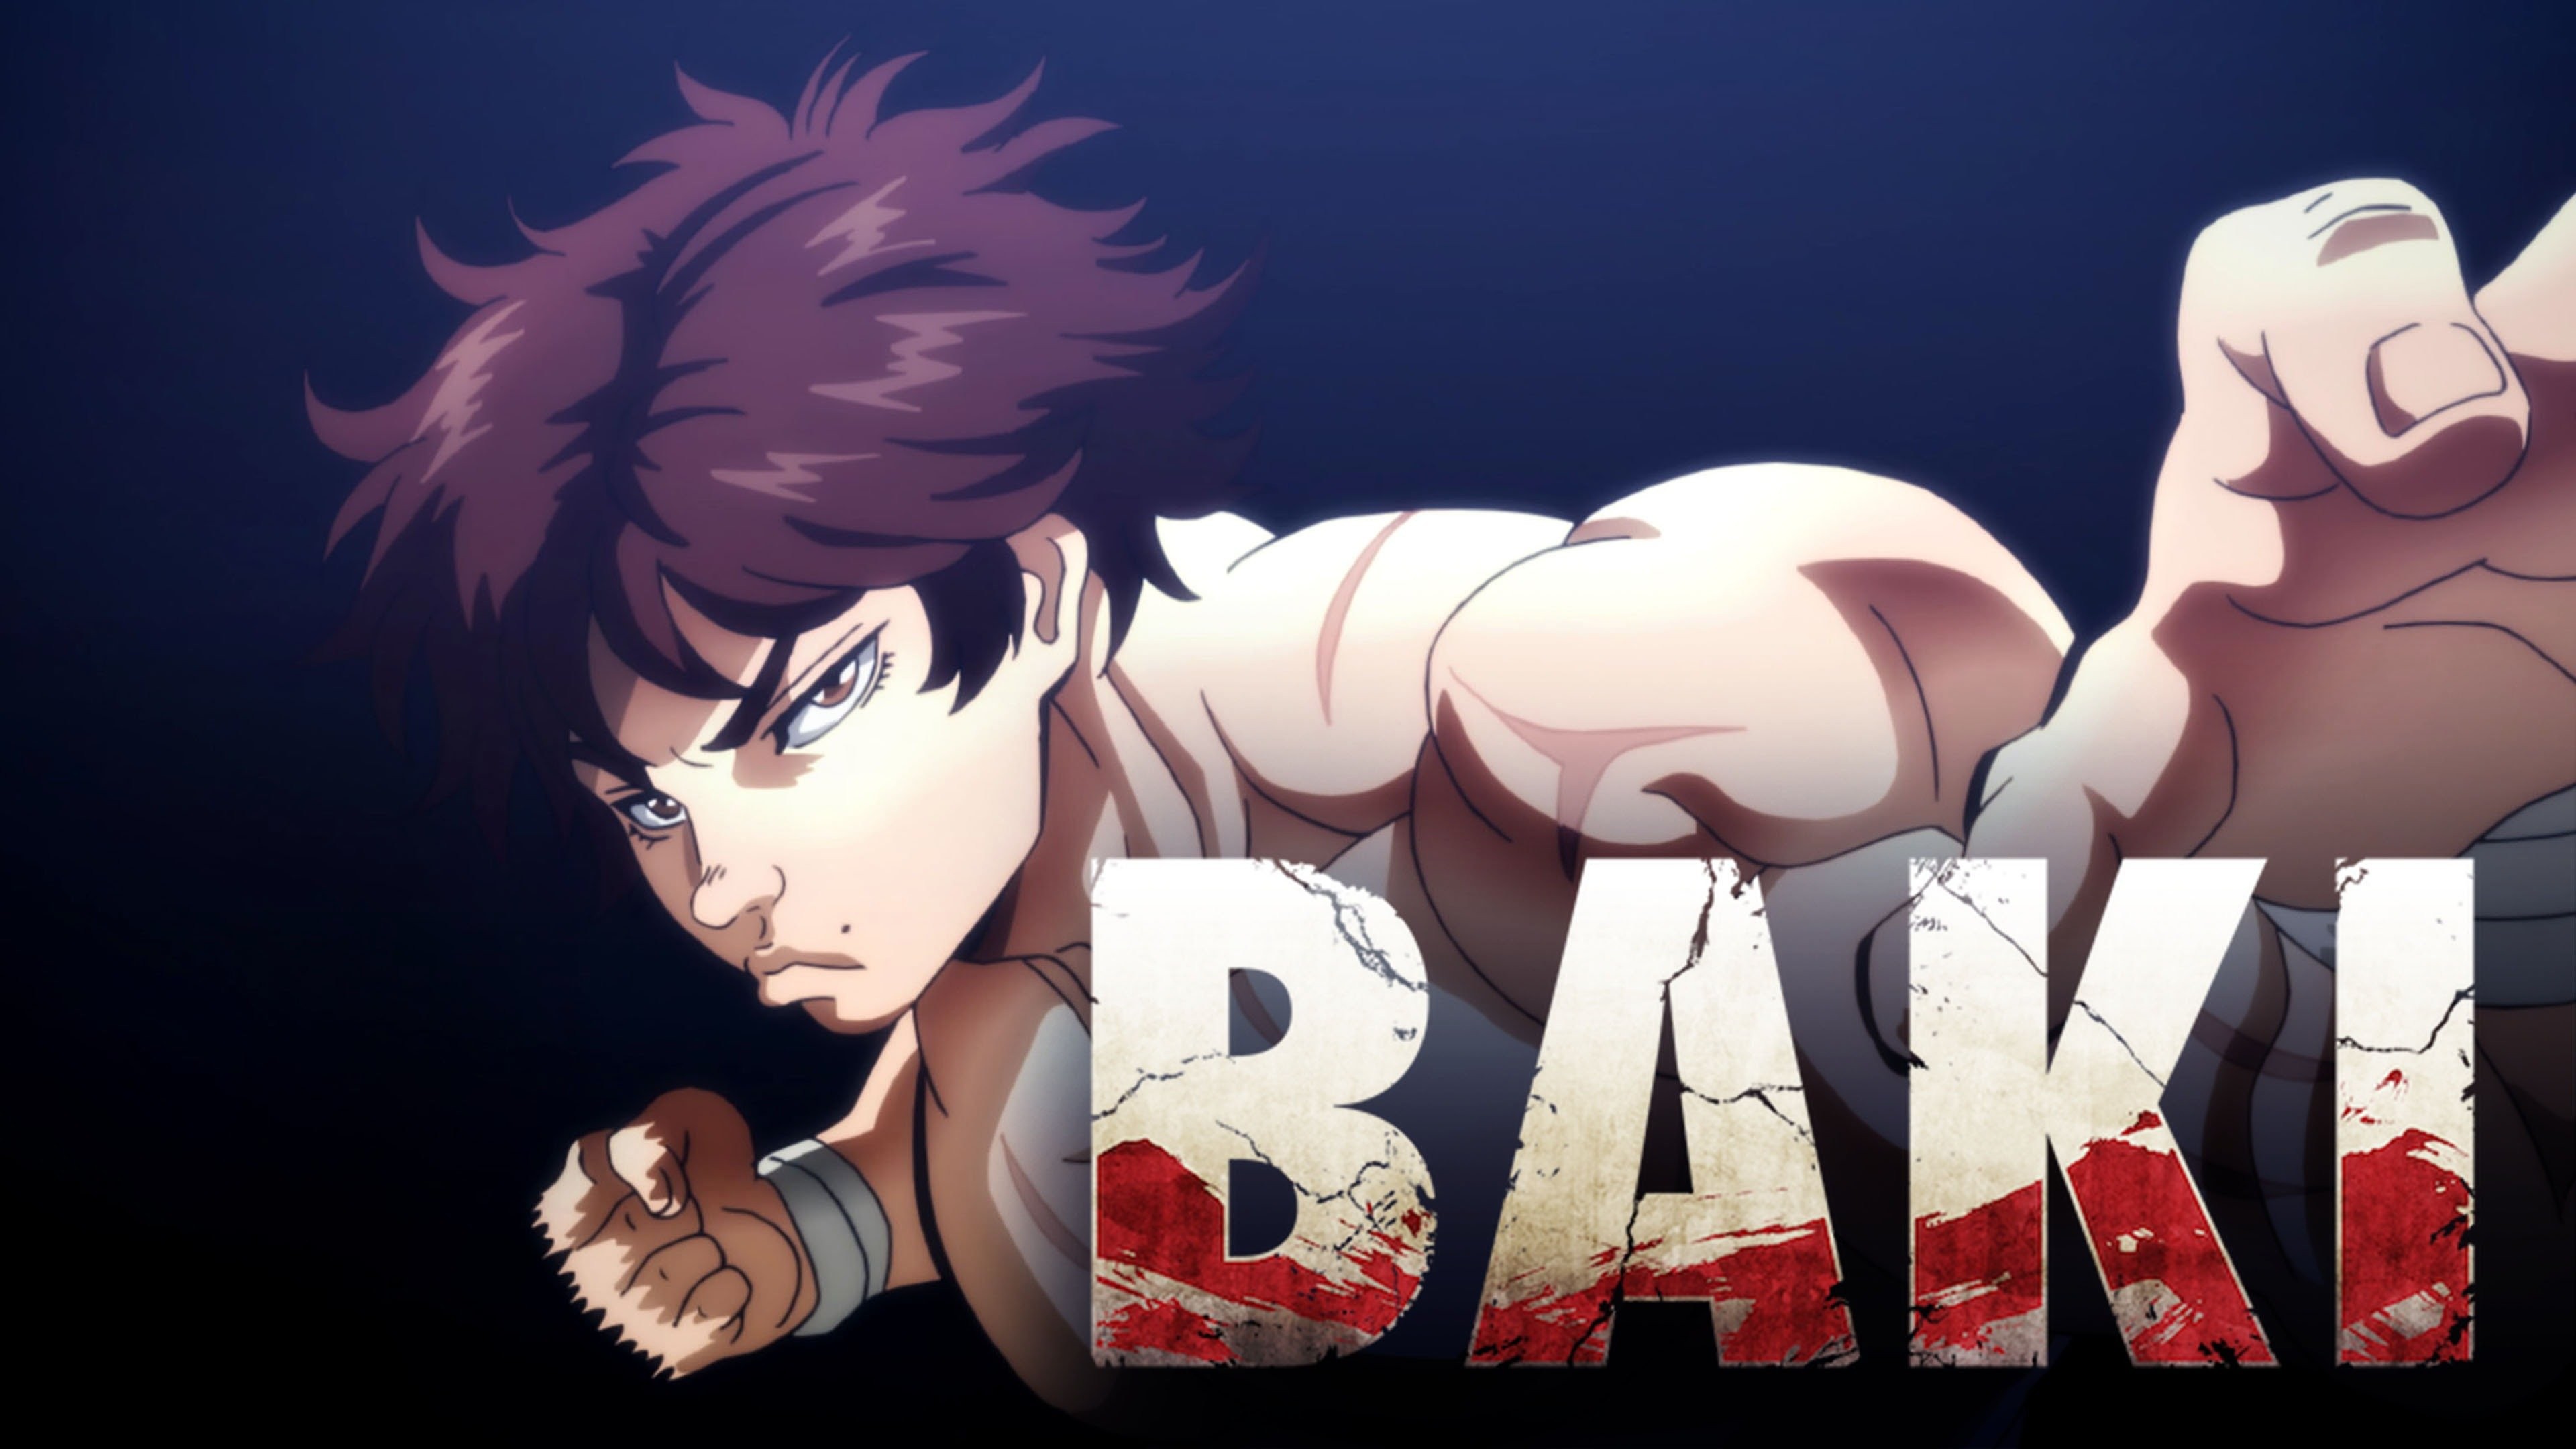  Anime da Netflix 'Baki - O Campeão' ganha novo trailer